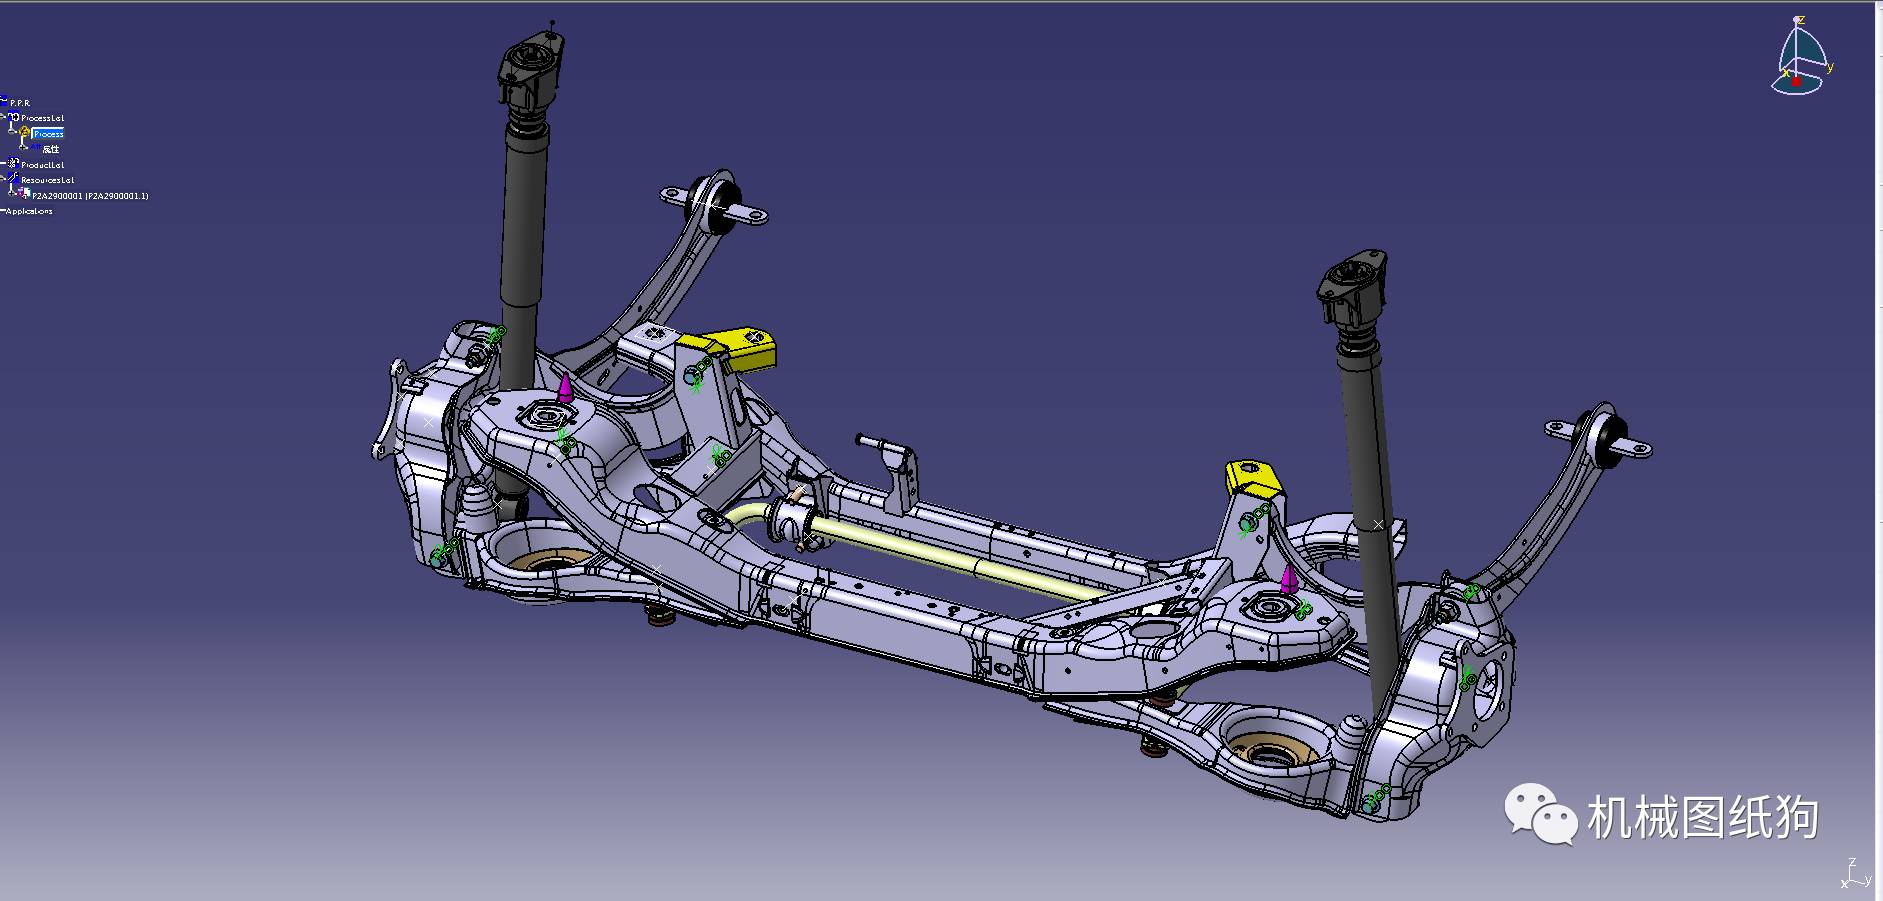 【汽车轿车*众】汽车底盘悬架设计3D图纸 CATIA设计数模图档